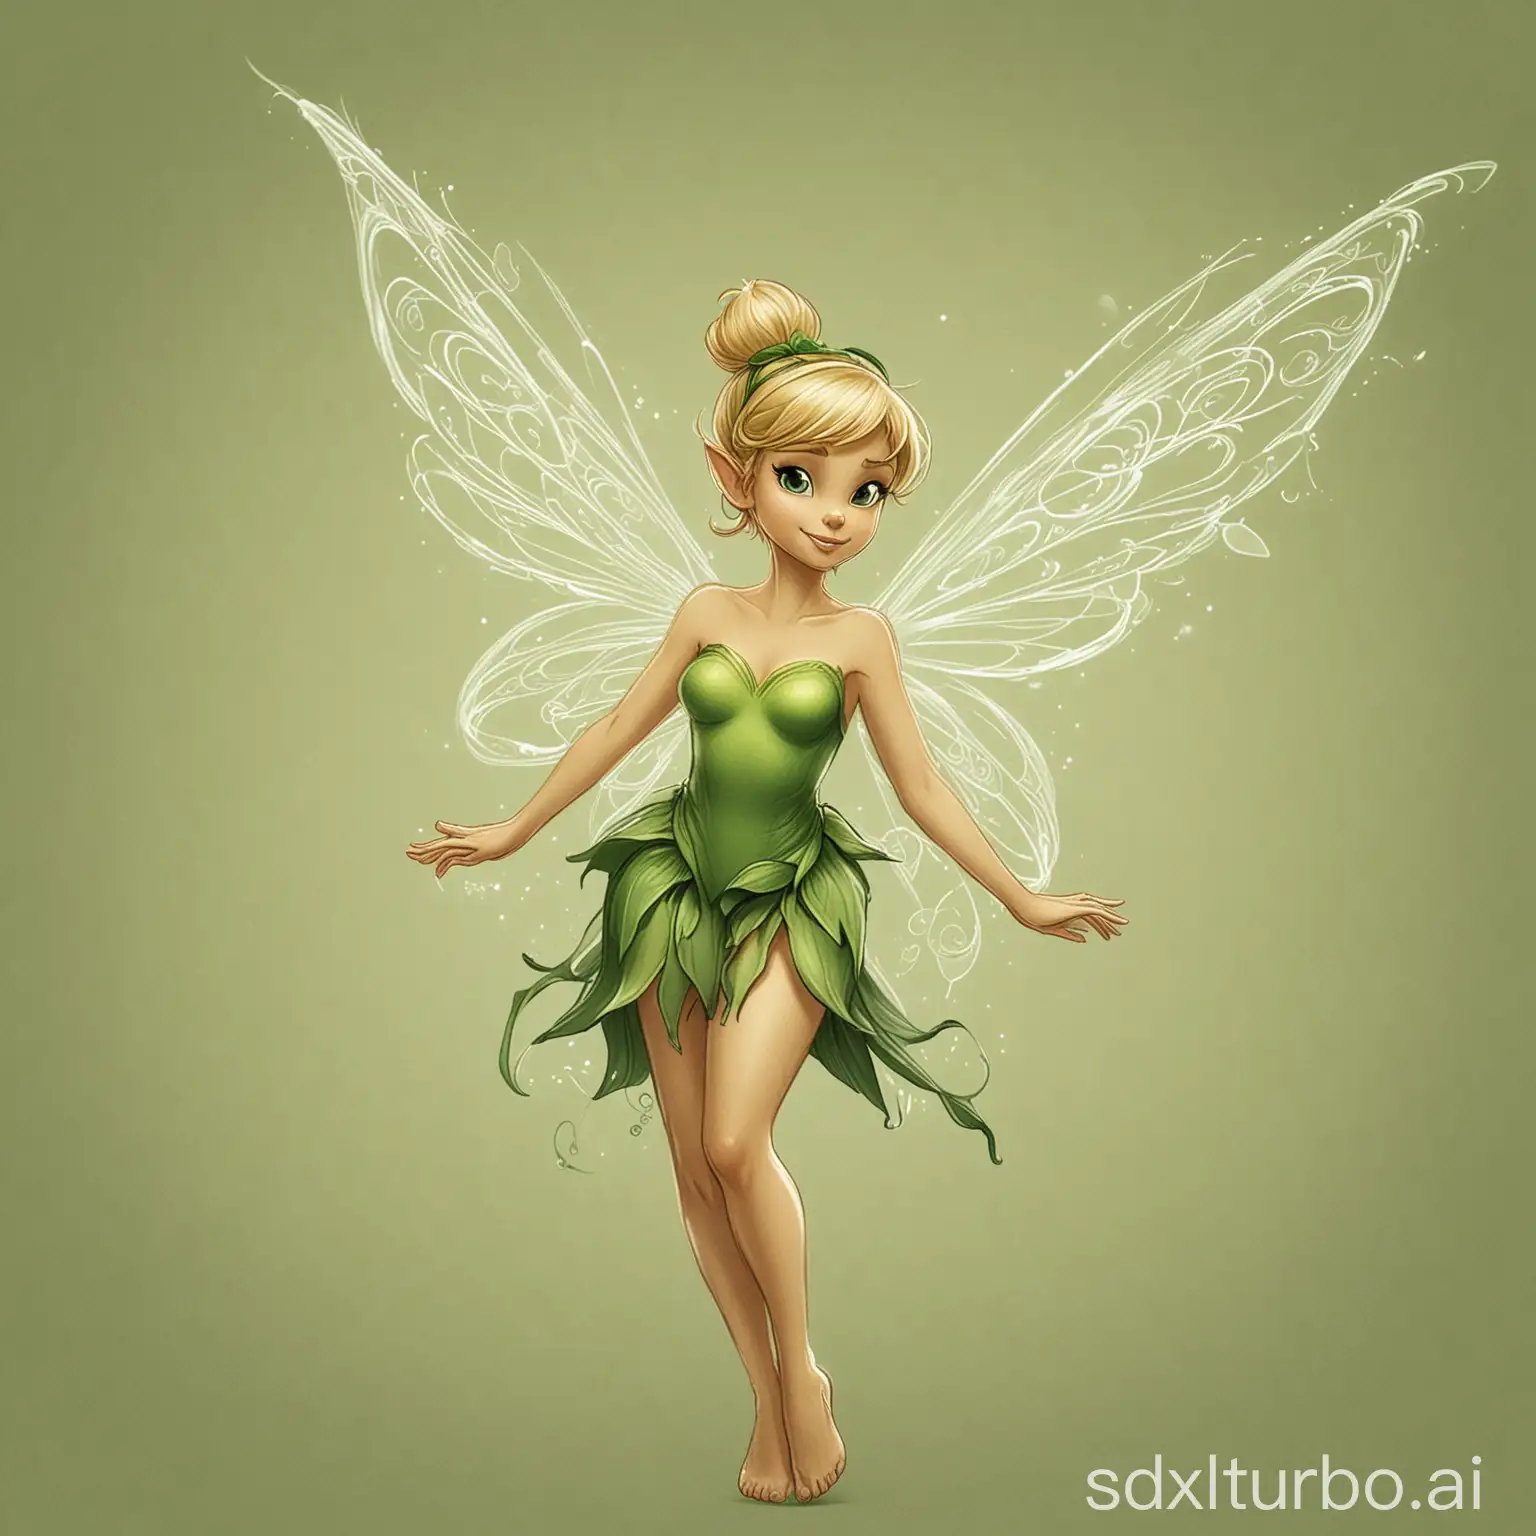 quiero un dibujo de campanilla, vestida de verde, con sus alas, los brazos cruzados, de pie, con un fondo color crudo y una floritura en el fondo
